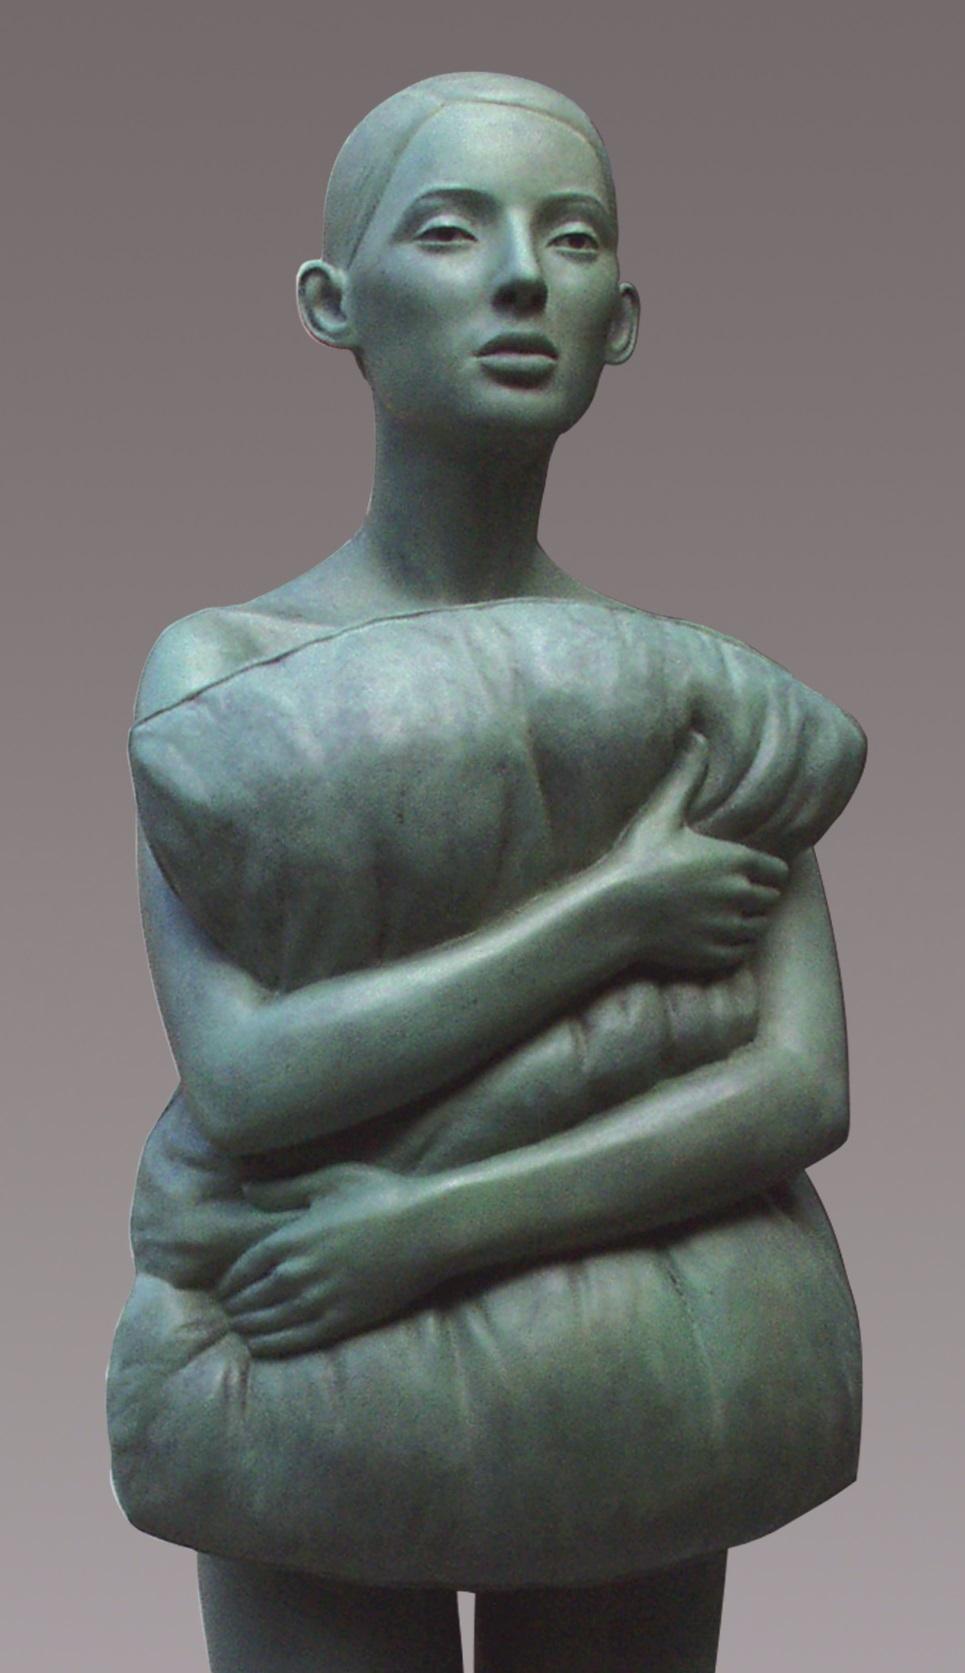 Kussen Kissen Bronze-Skulptur stehendes Mädchen mit grüner Patina – Sculpture von Erwin Meijer